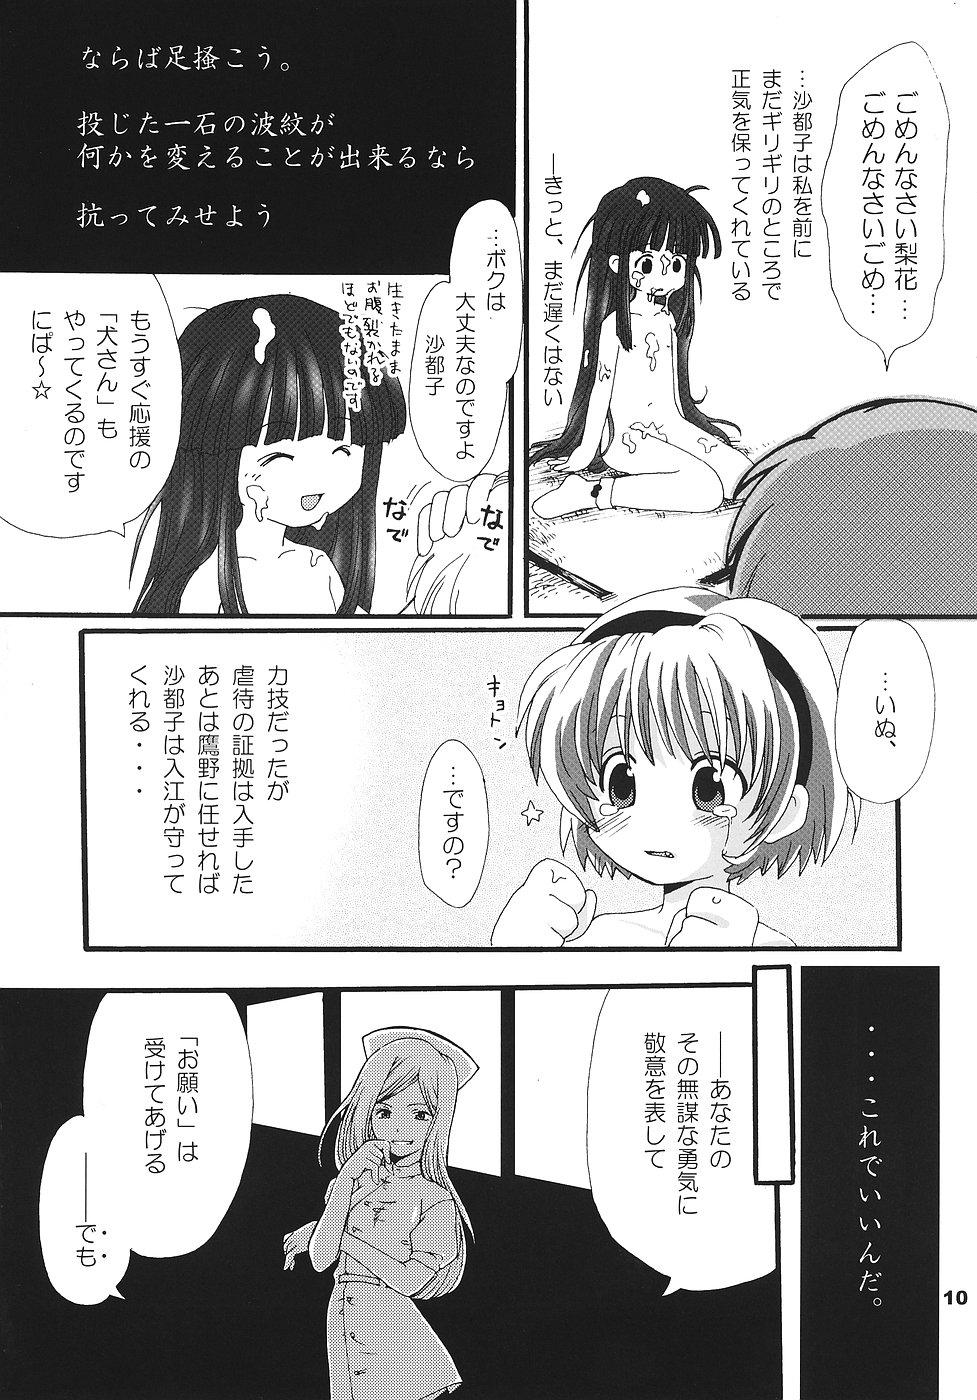 Office Sex Higurashi no Koe, Ima wa Tae - Higurashi no naku koro ni Harcore - Page 9